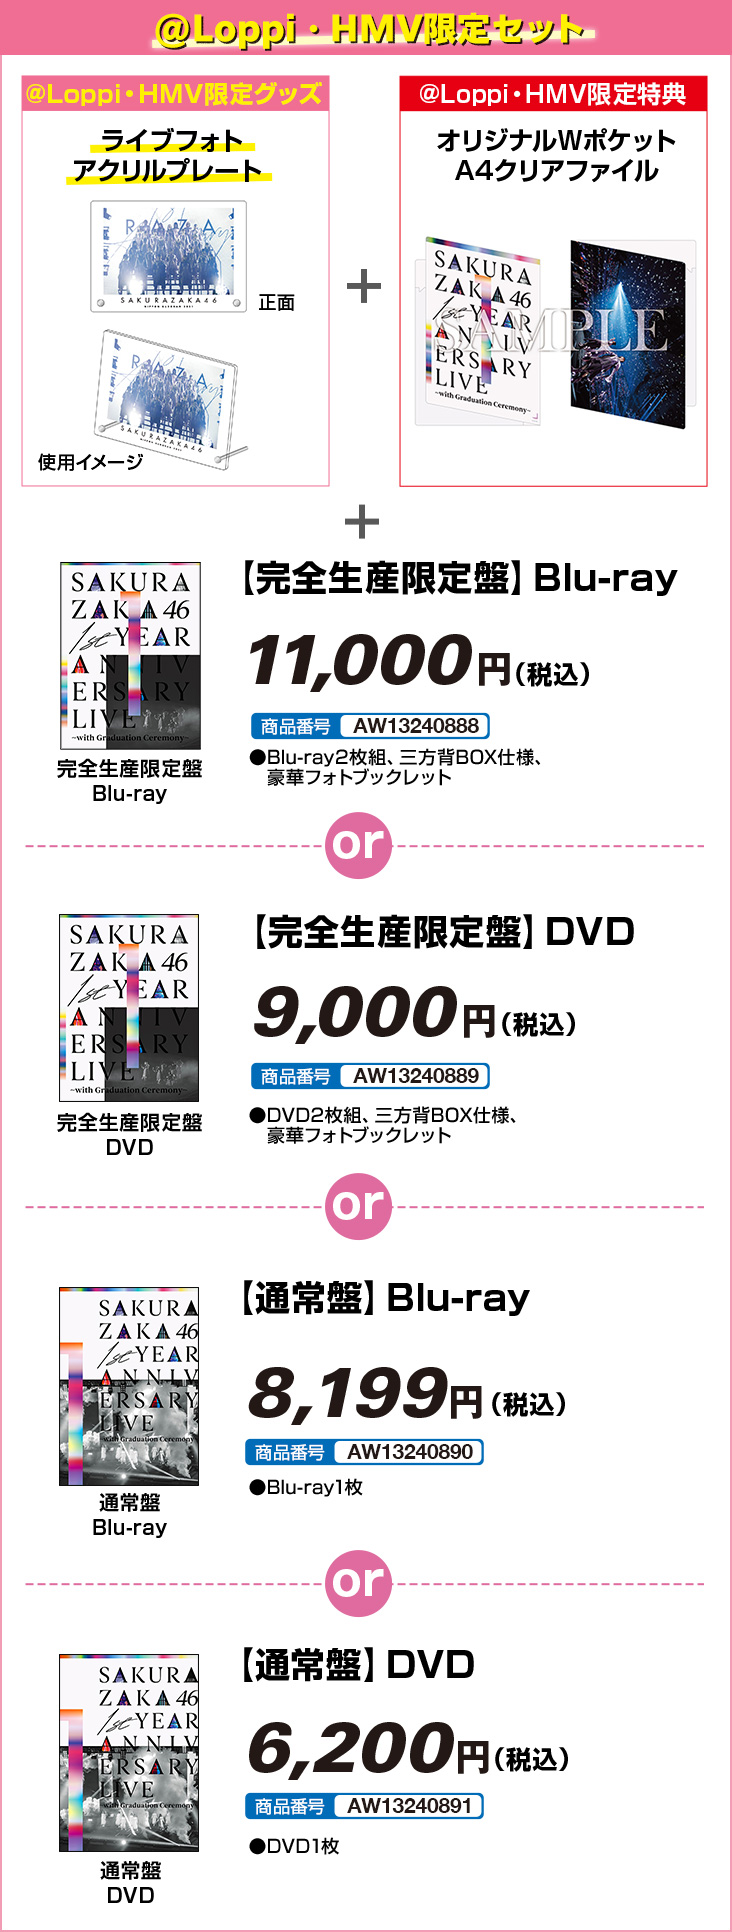 櫻坂46 『1st YEAR ANNIVERSARY LIVE ～ with Graduation Ceremony ～』Blu-ray＆DVD @Loppi・HMV限定セット